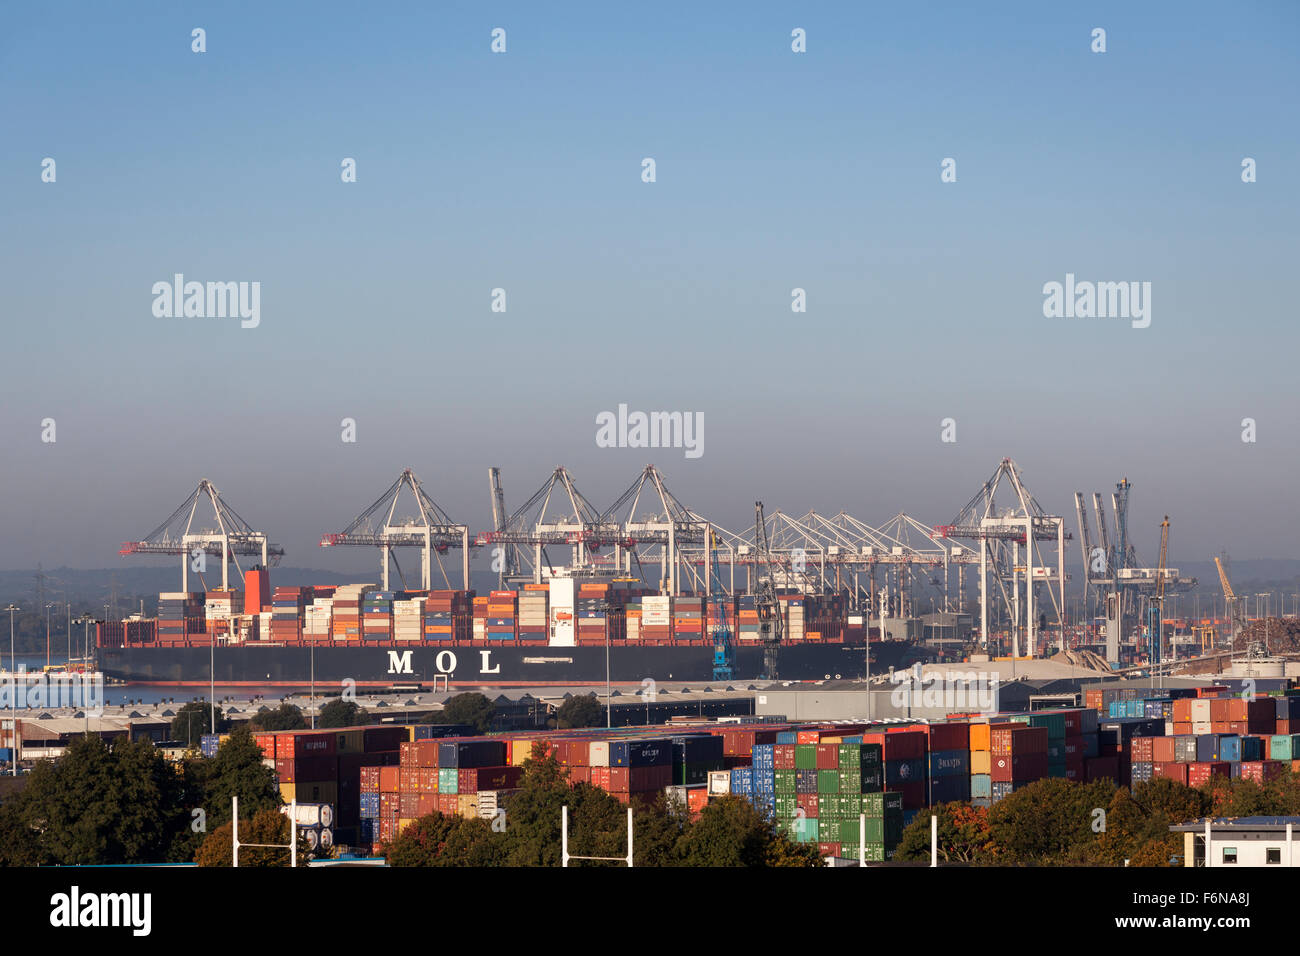 Mol contenitore quarzo nave raffigurata in Southampton Container Port, DP World, Southampton Docks Foto Stock